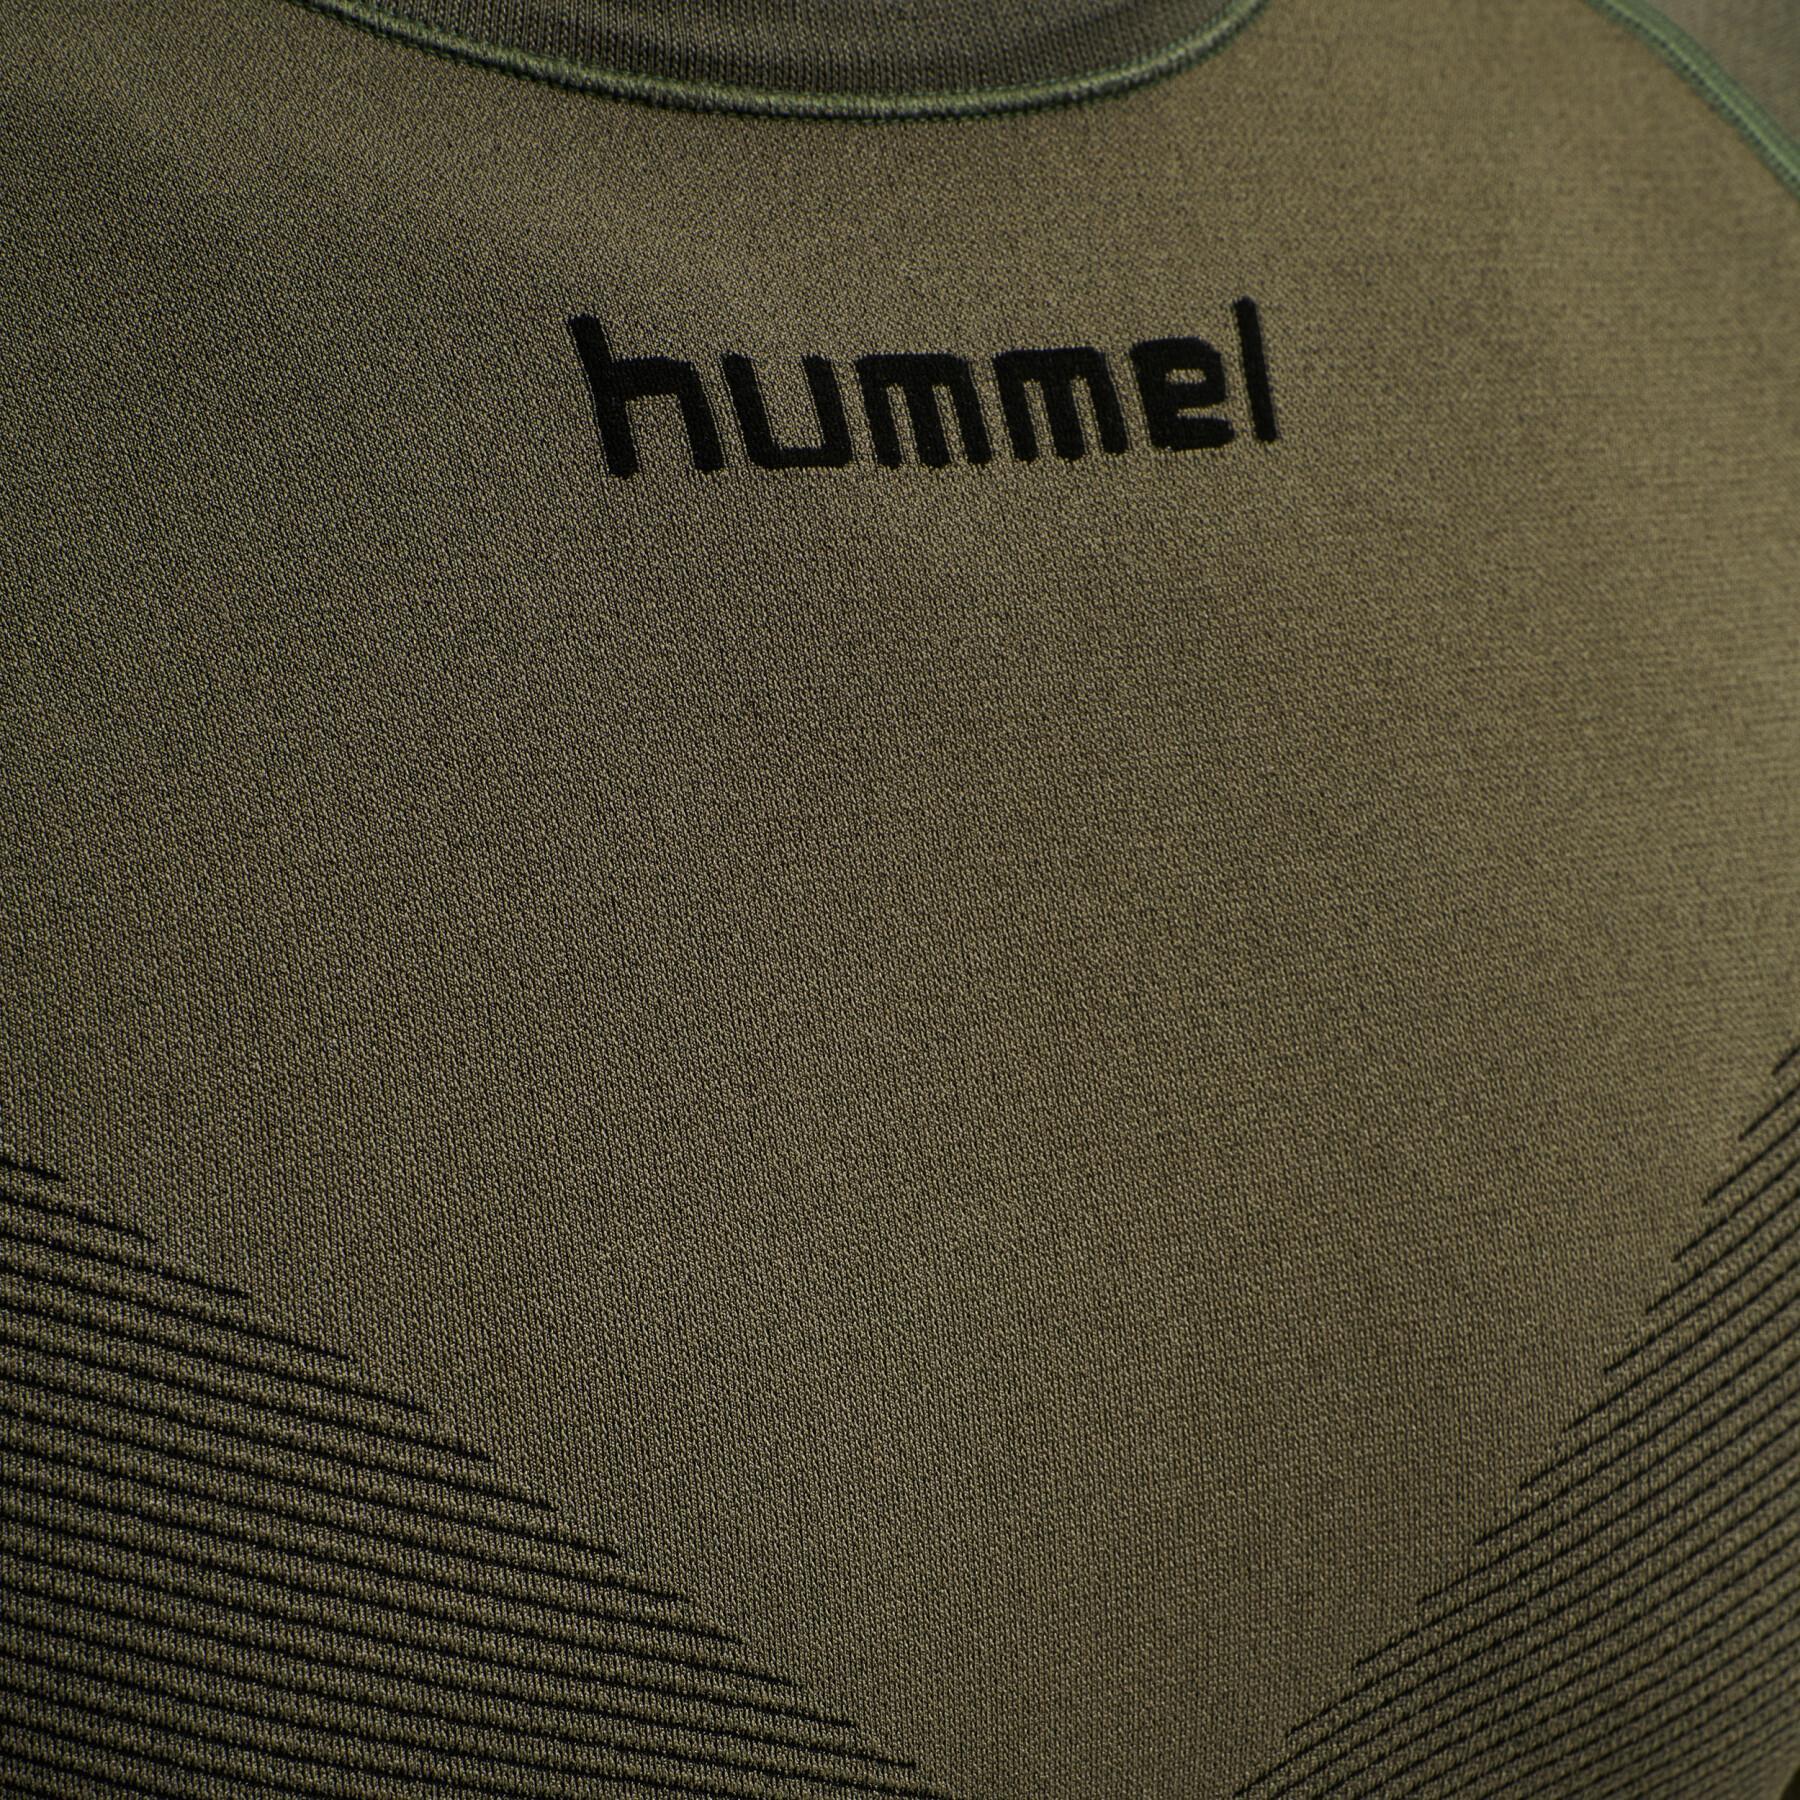 Jersey Hummel First